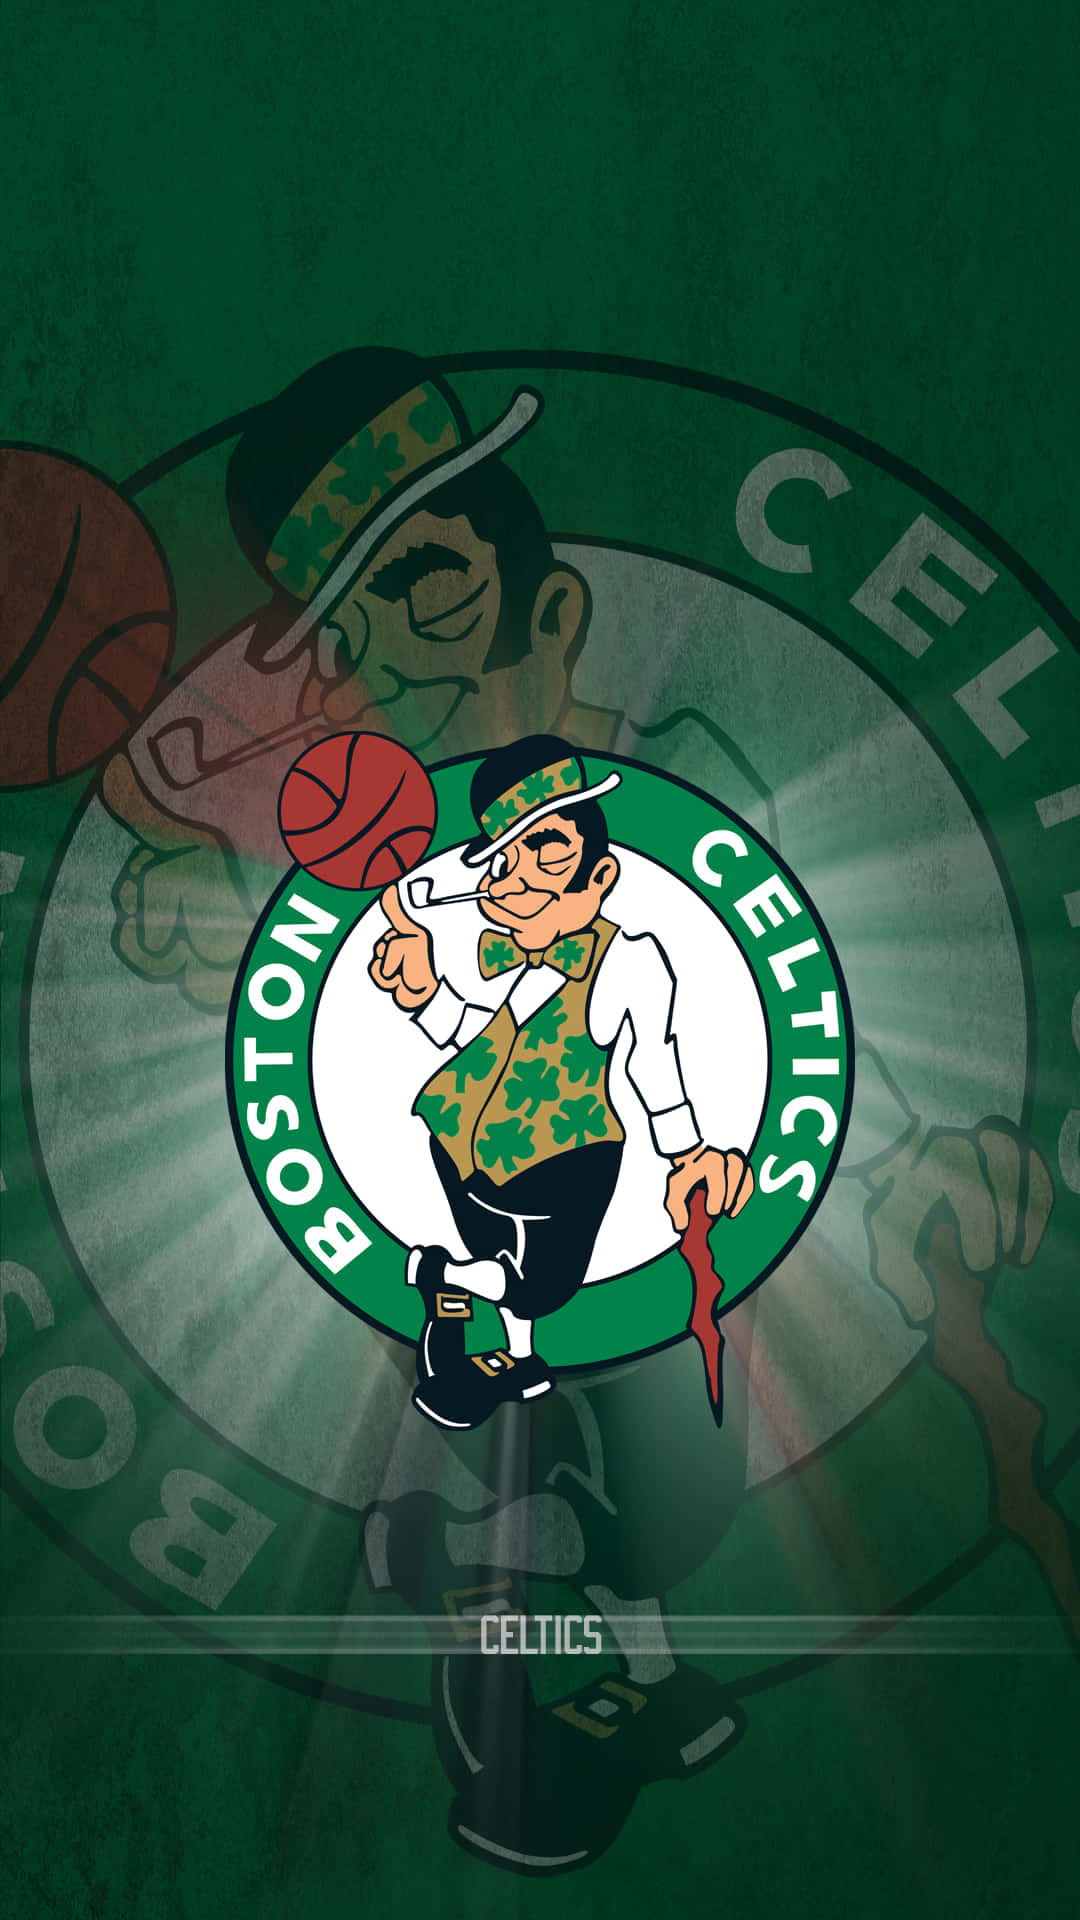 Celtics-logoet 1080 X 1920 Wallpaper